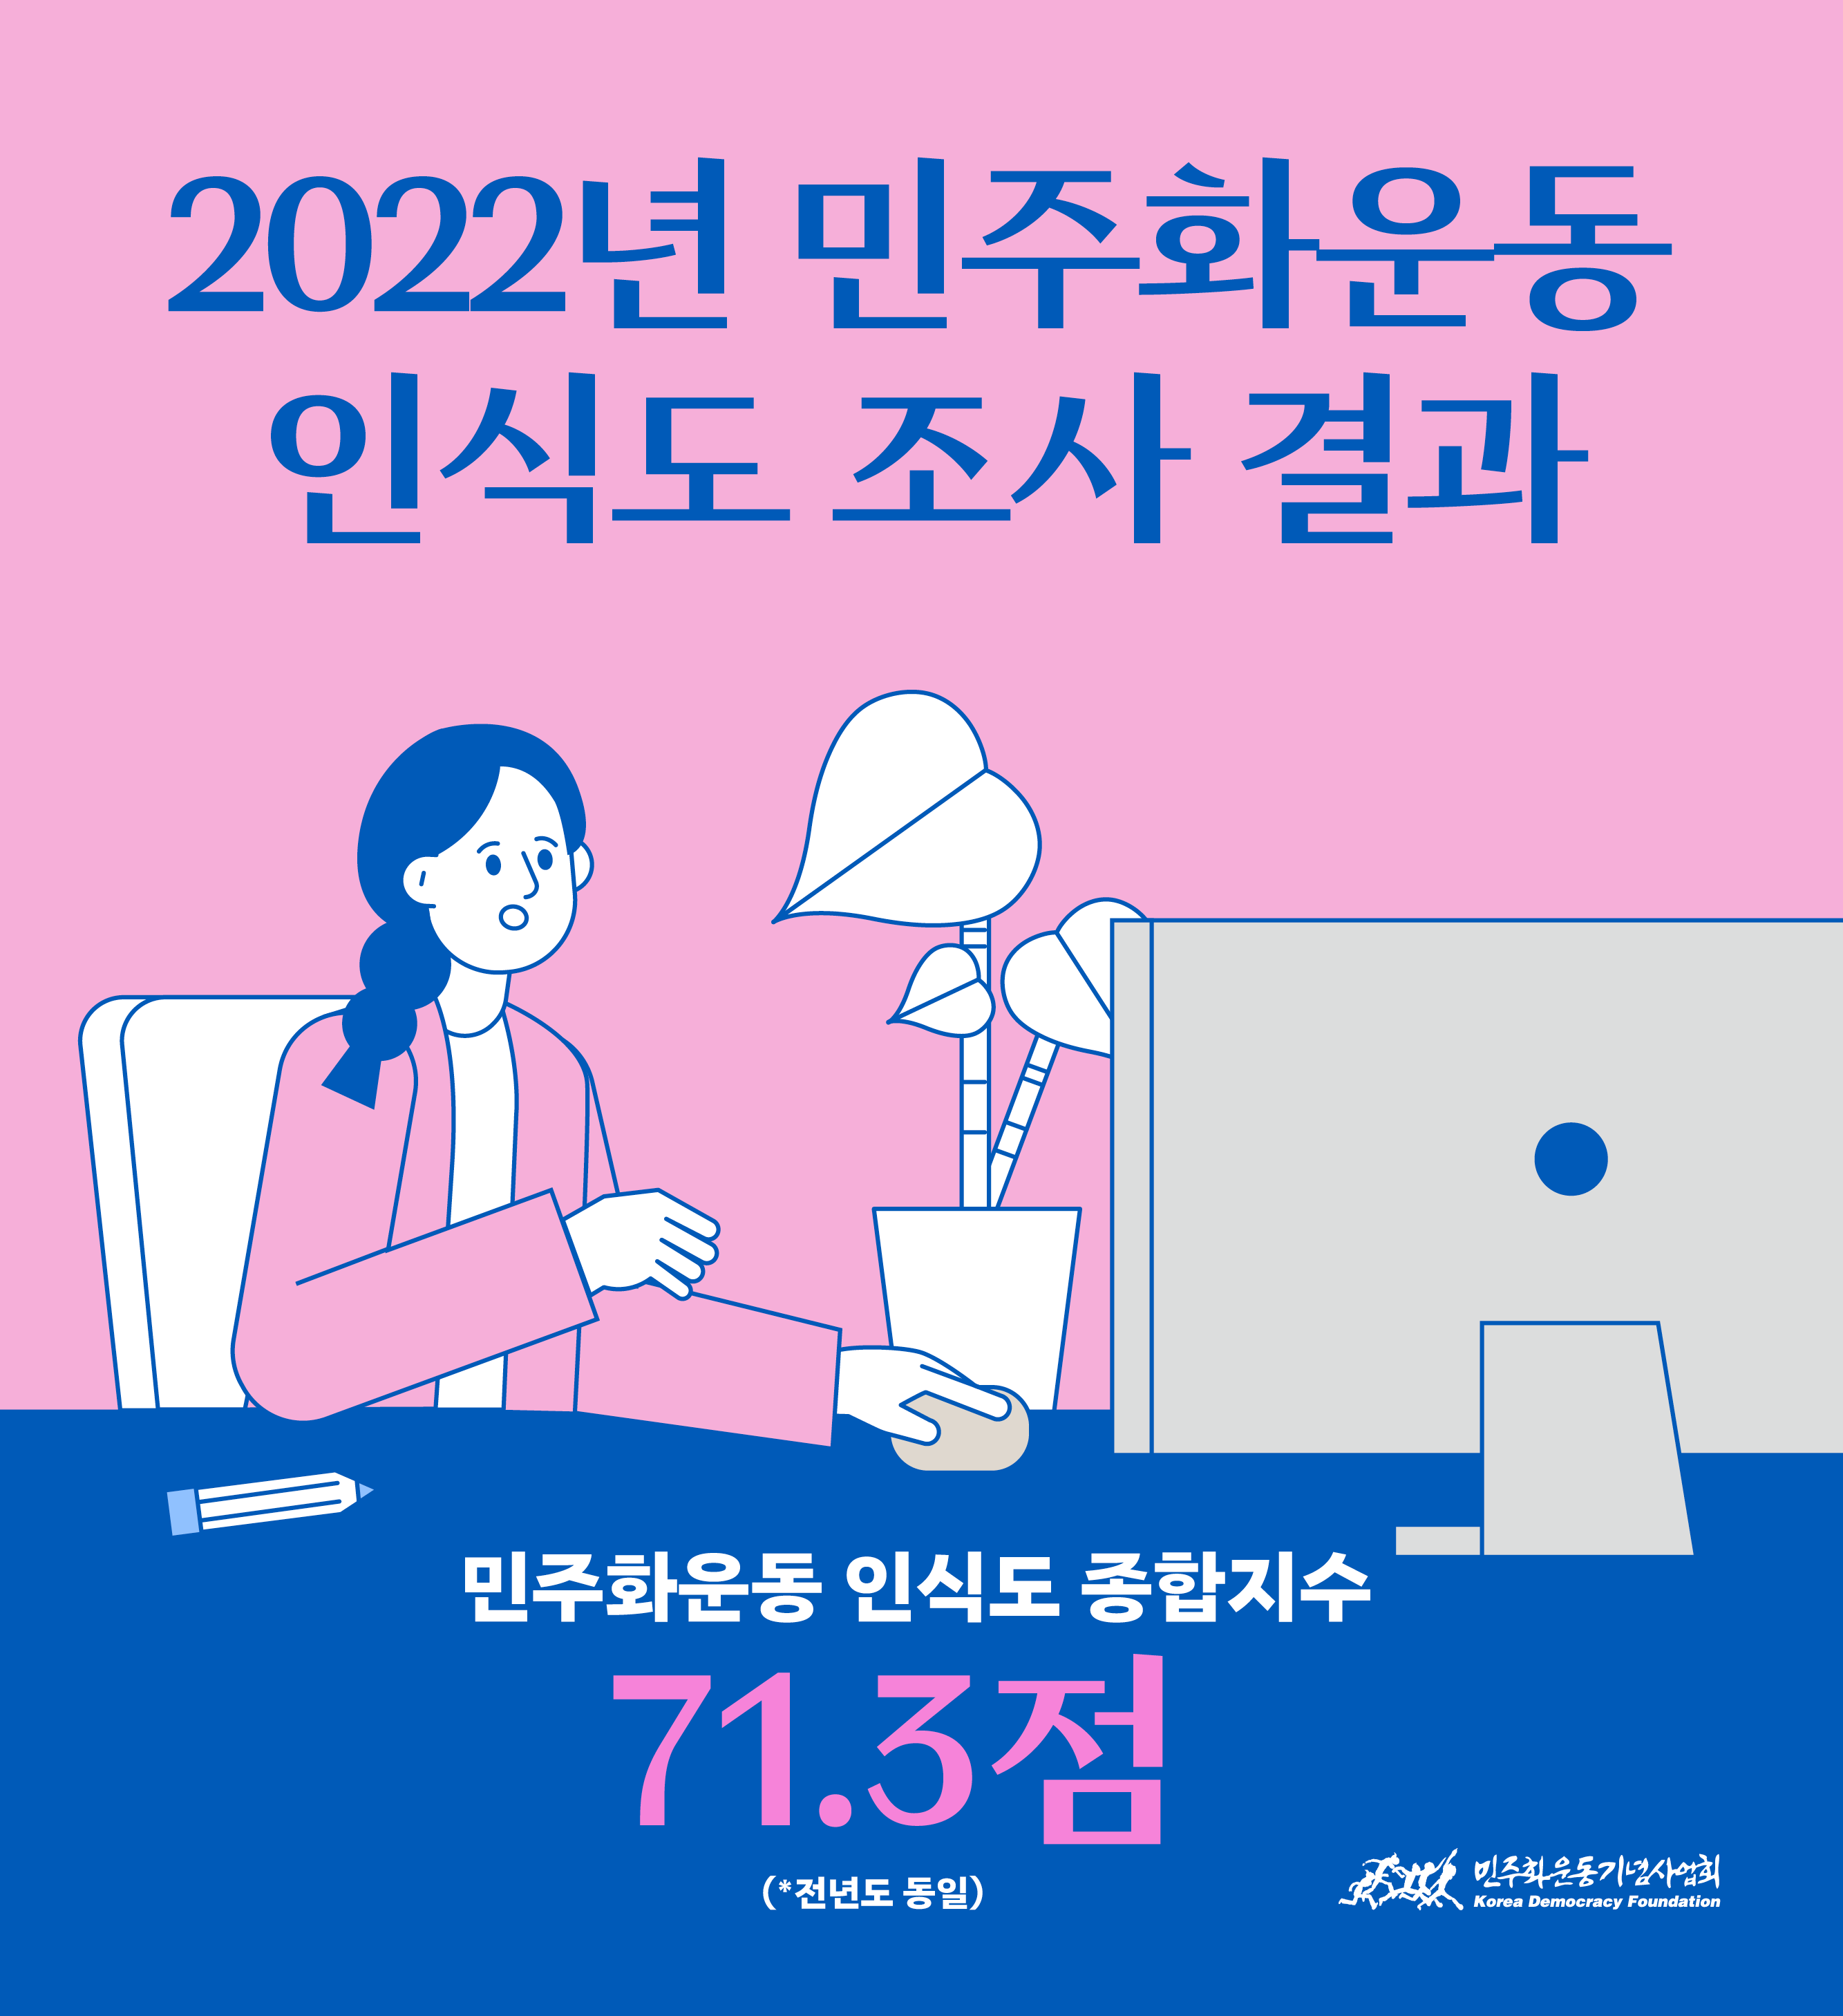 2022년 민주화운동 인식도 종합지수 71.3점